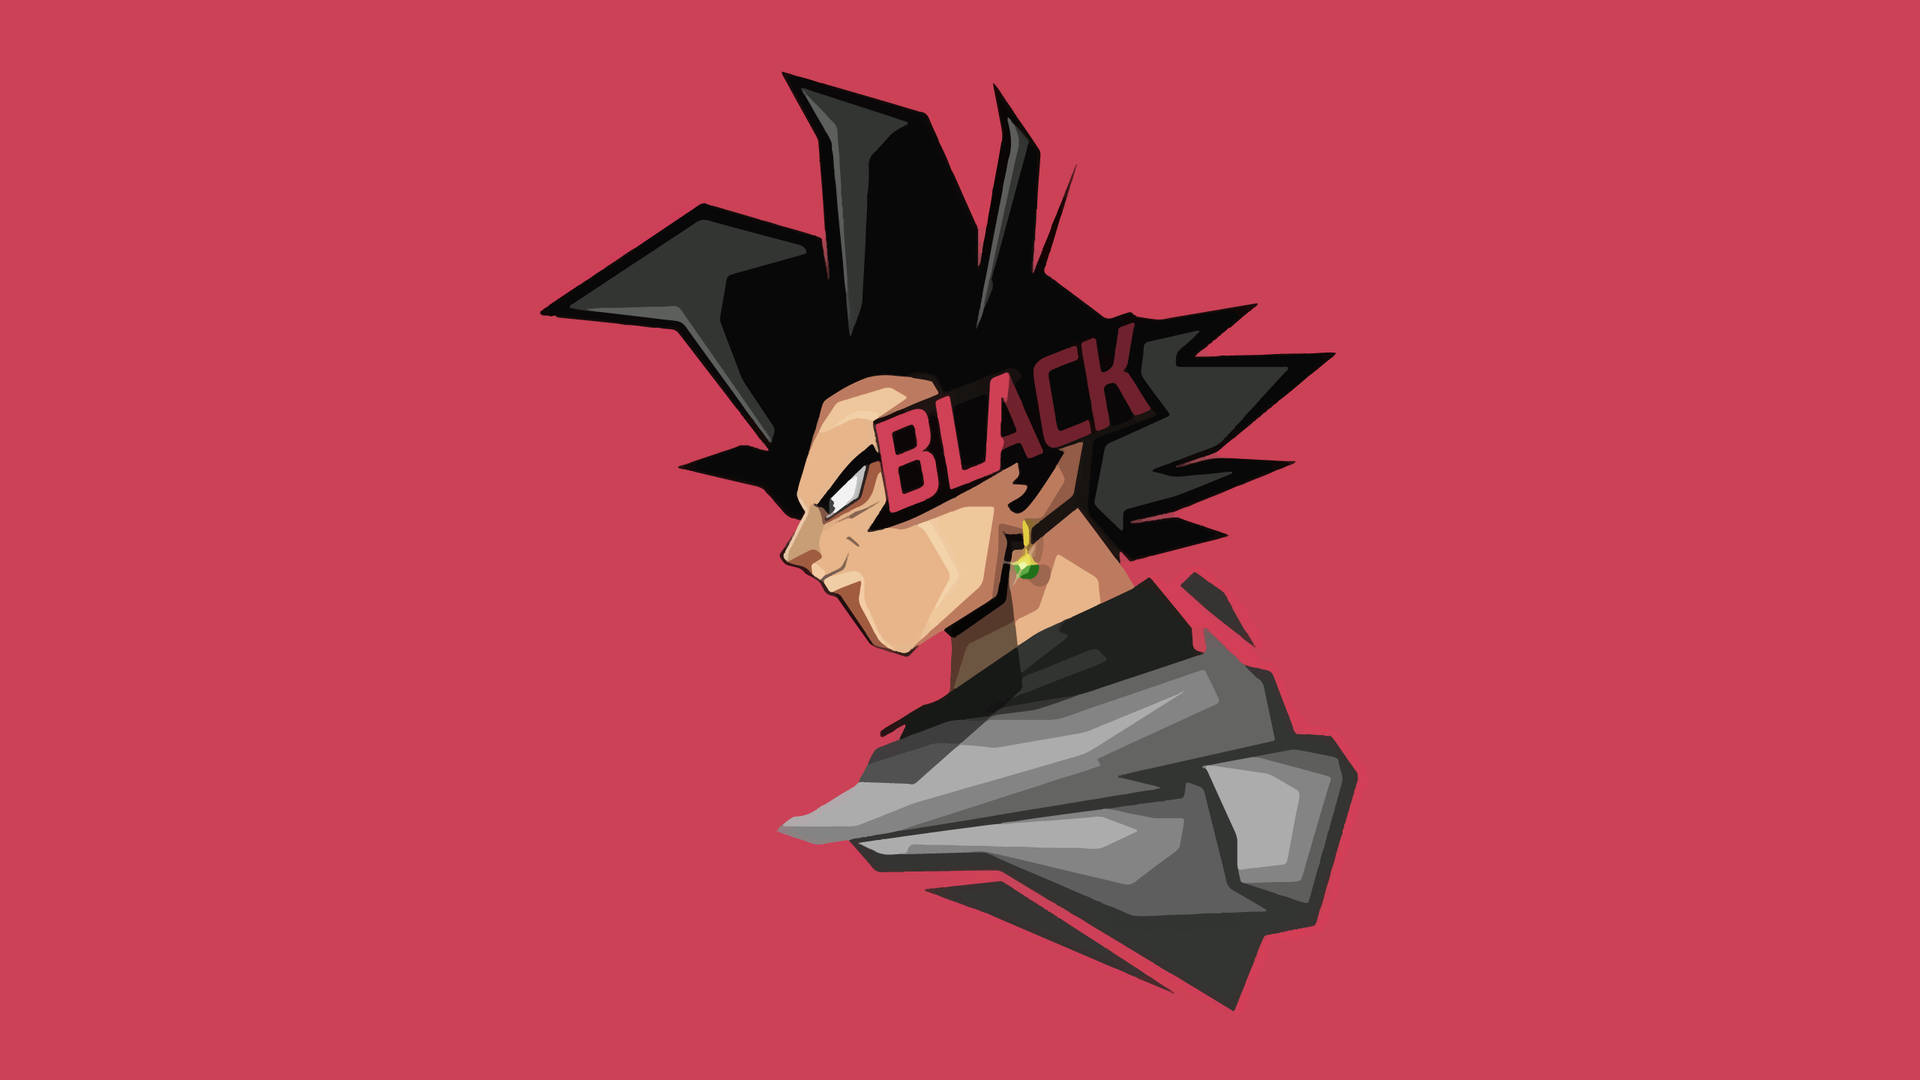 Black Goku Vector Art Background